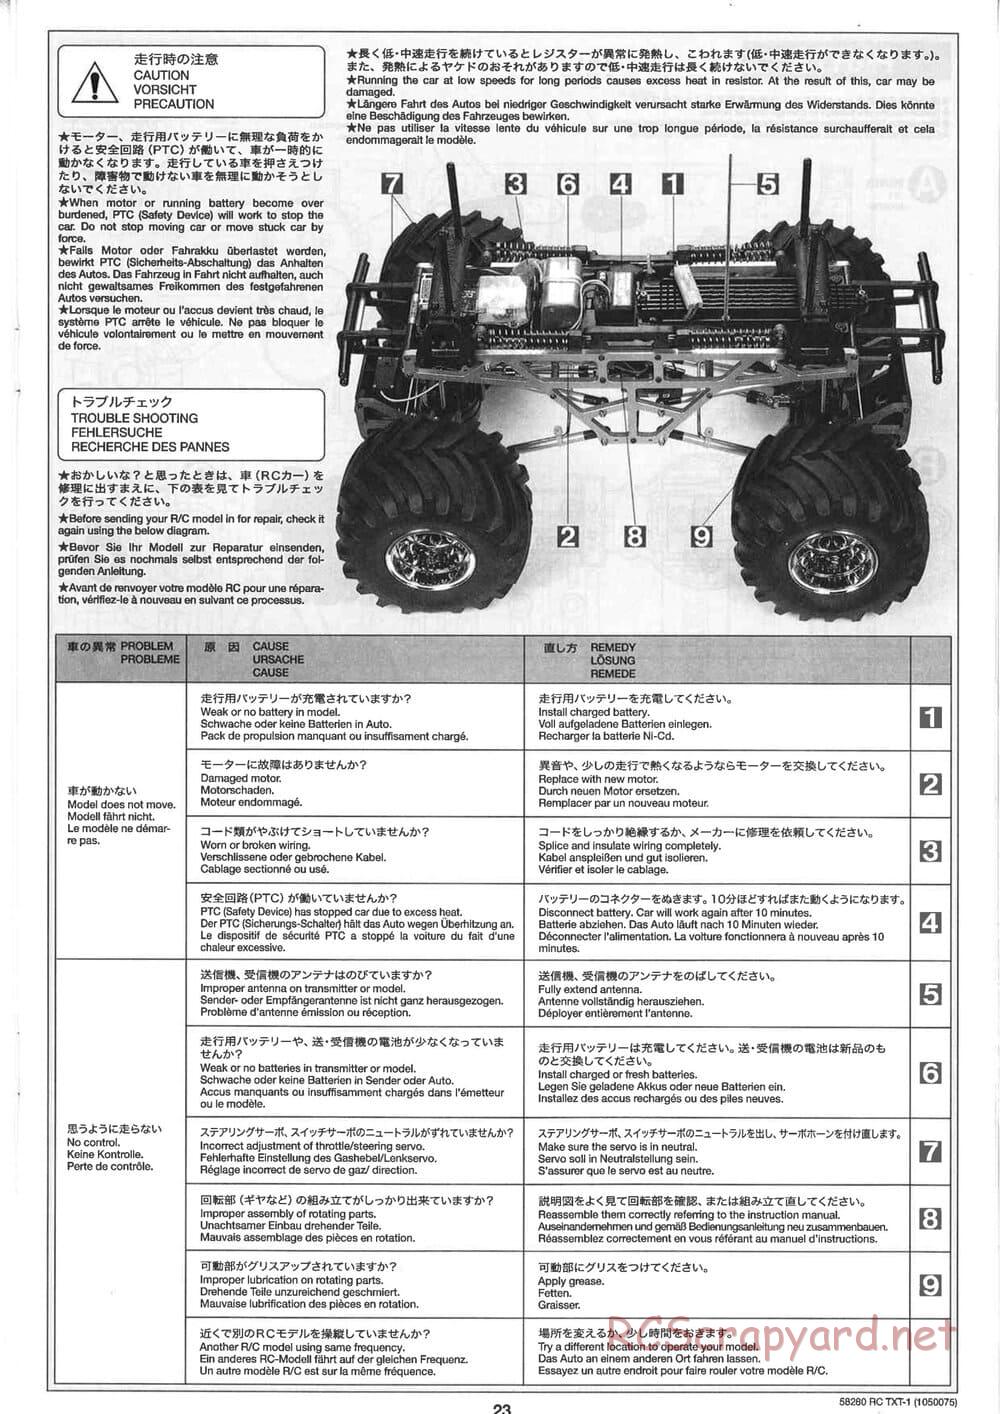 Tamiya - TXT-1 (Tamiya Xtreme Truck) Chassis - Manual - Page 23